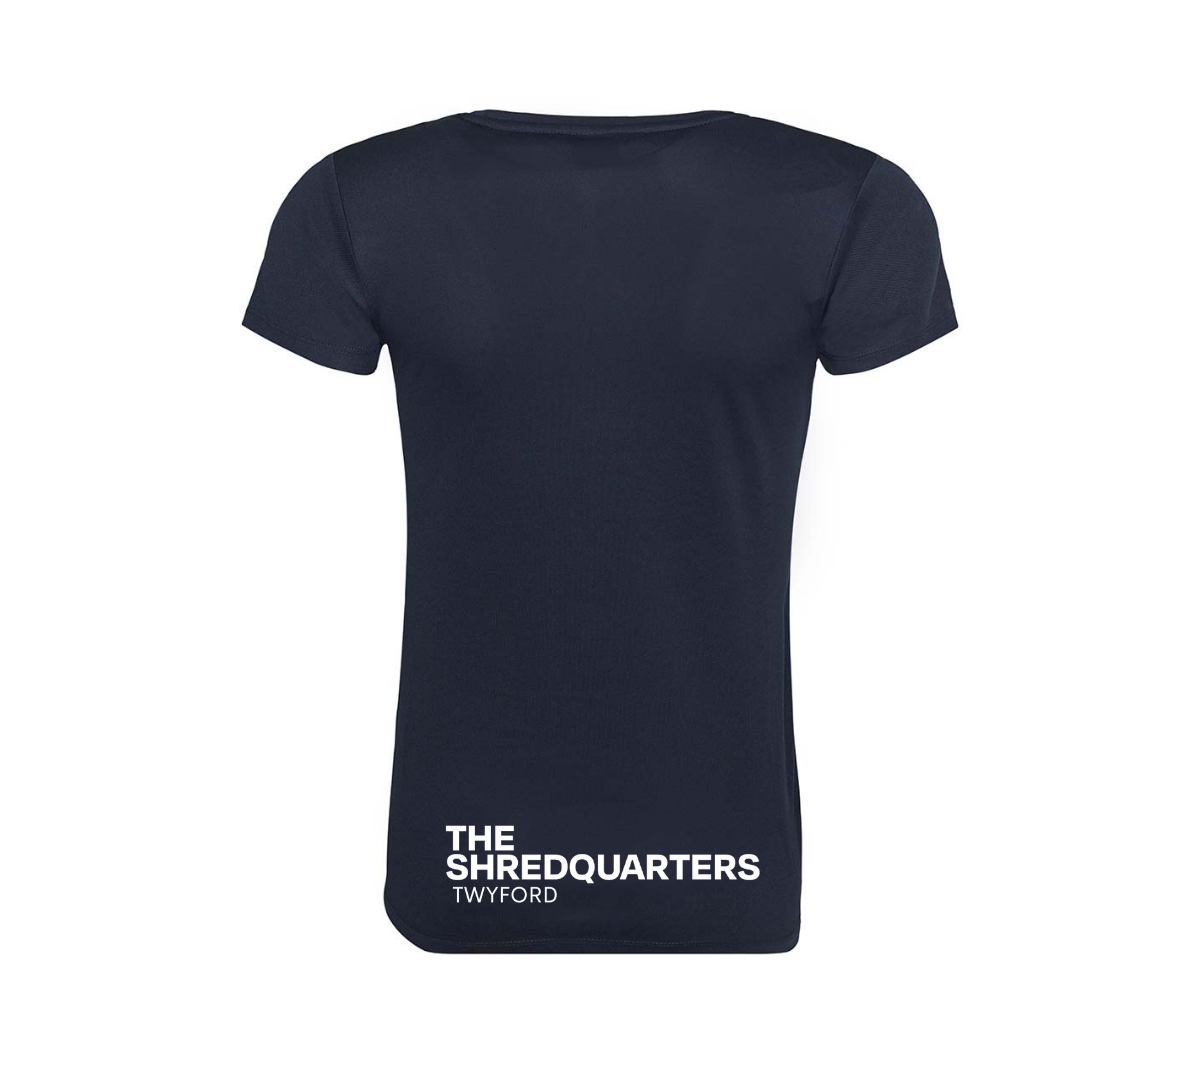 The Shredquarters Twyford Ladies Training T-Shirts